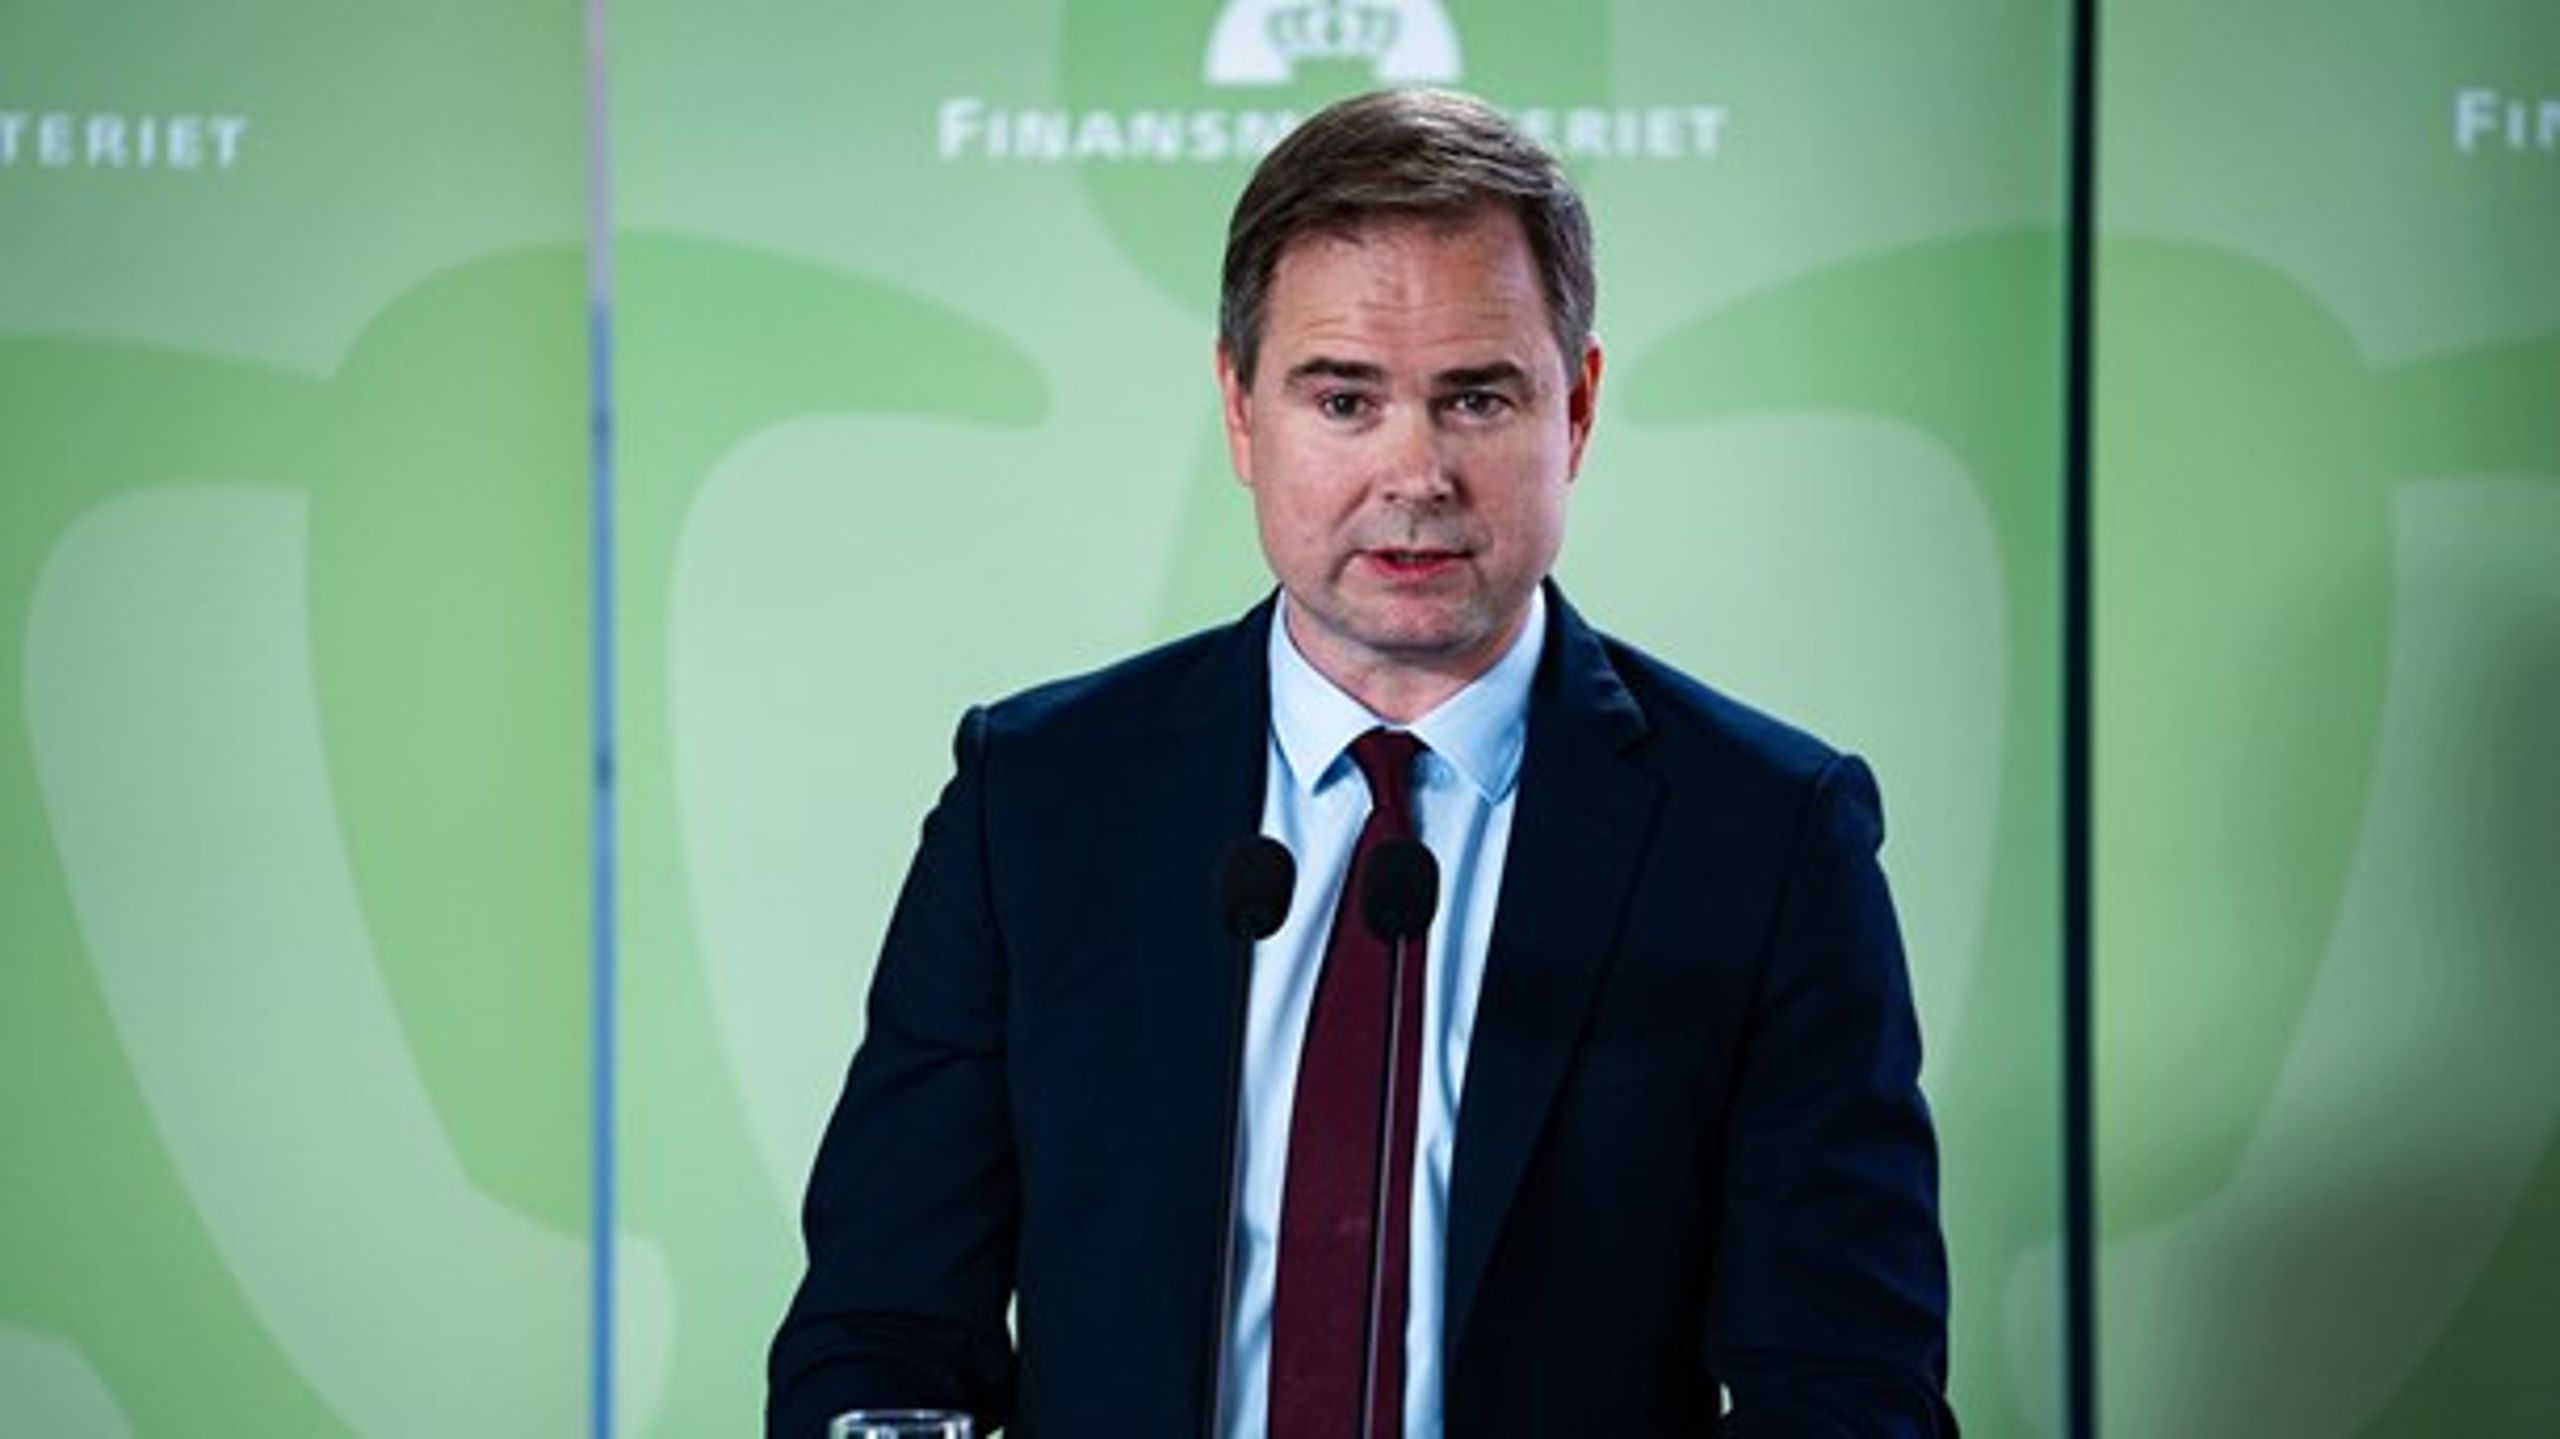 Finansminister Nicolai Wammen ved præsentationen af regeringens finanslovsudspil i Rentekammersalen i Finansministeriet.